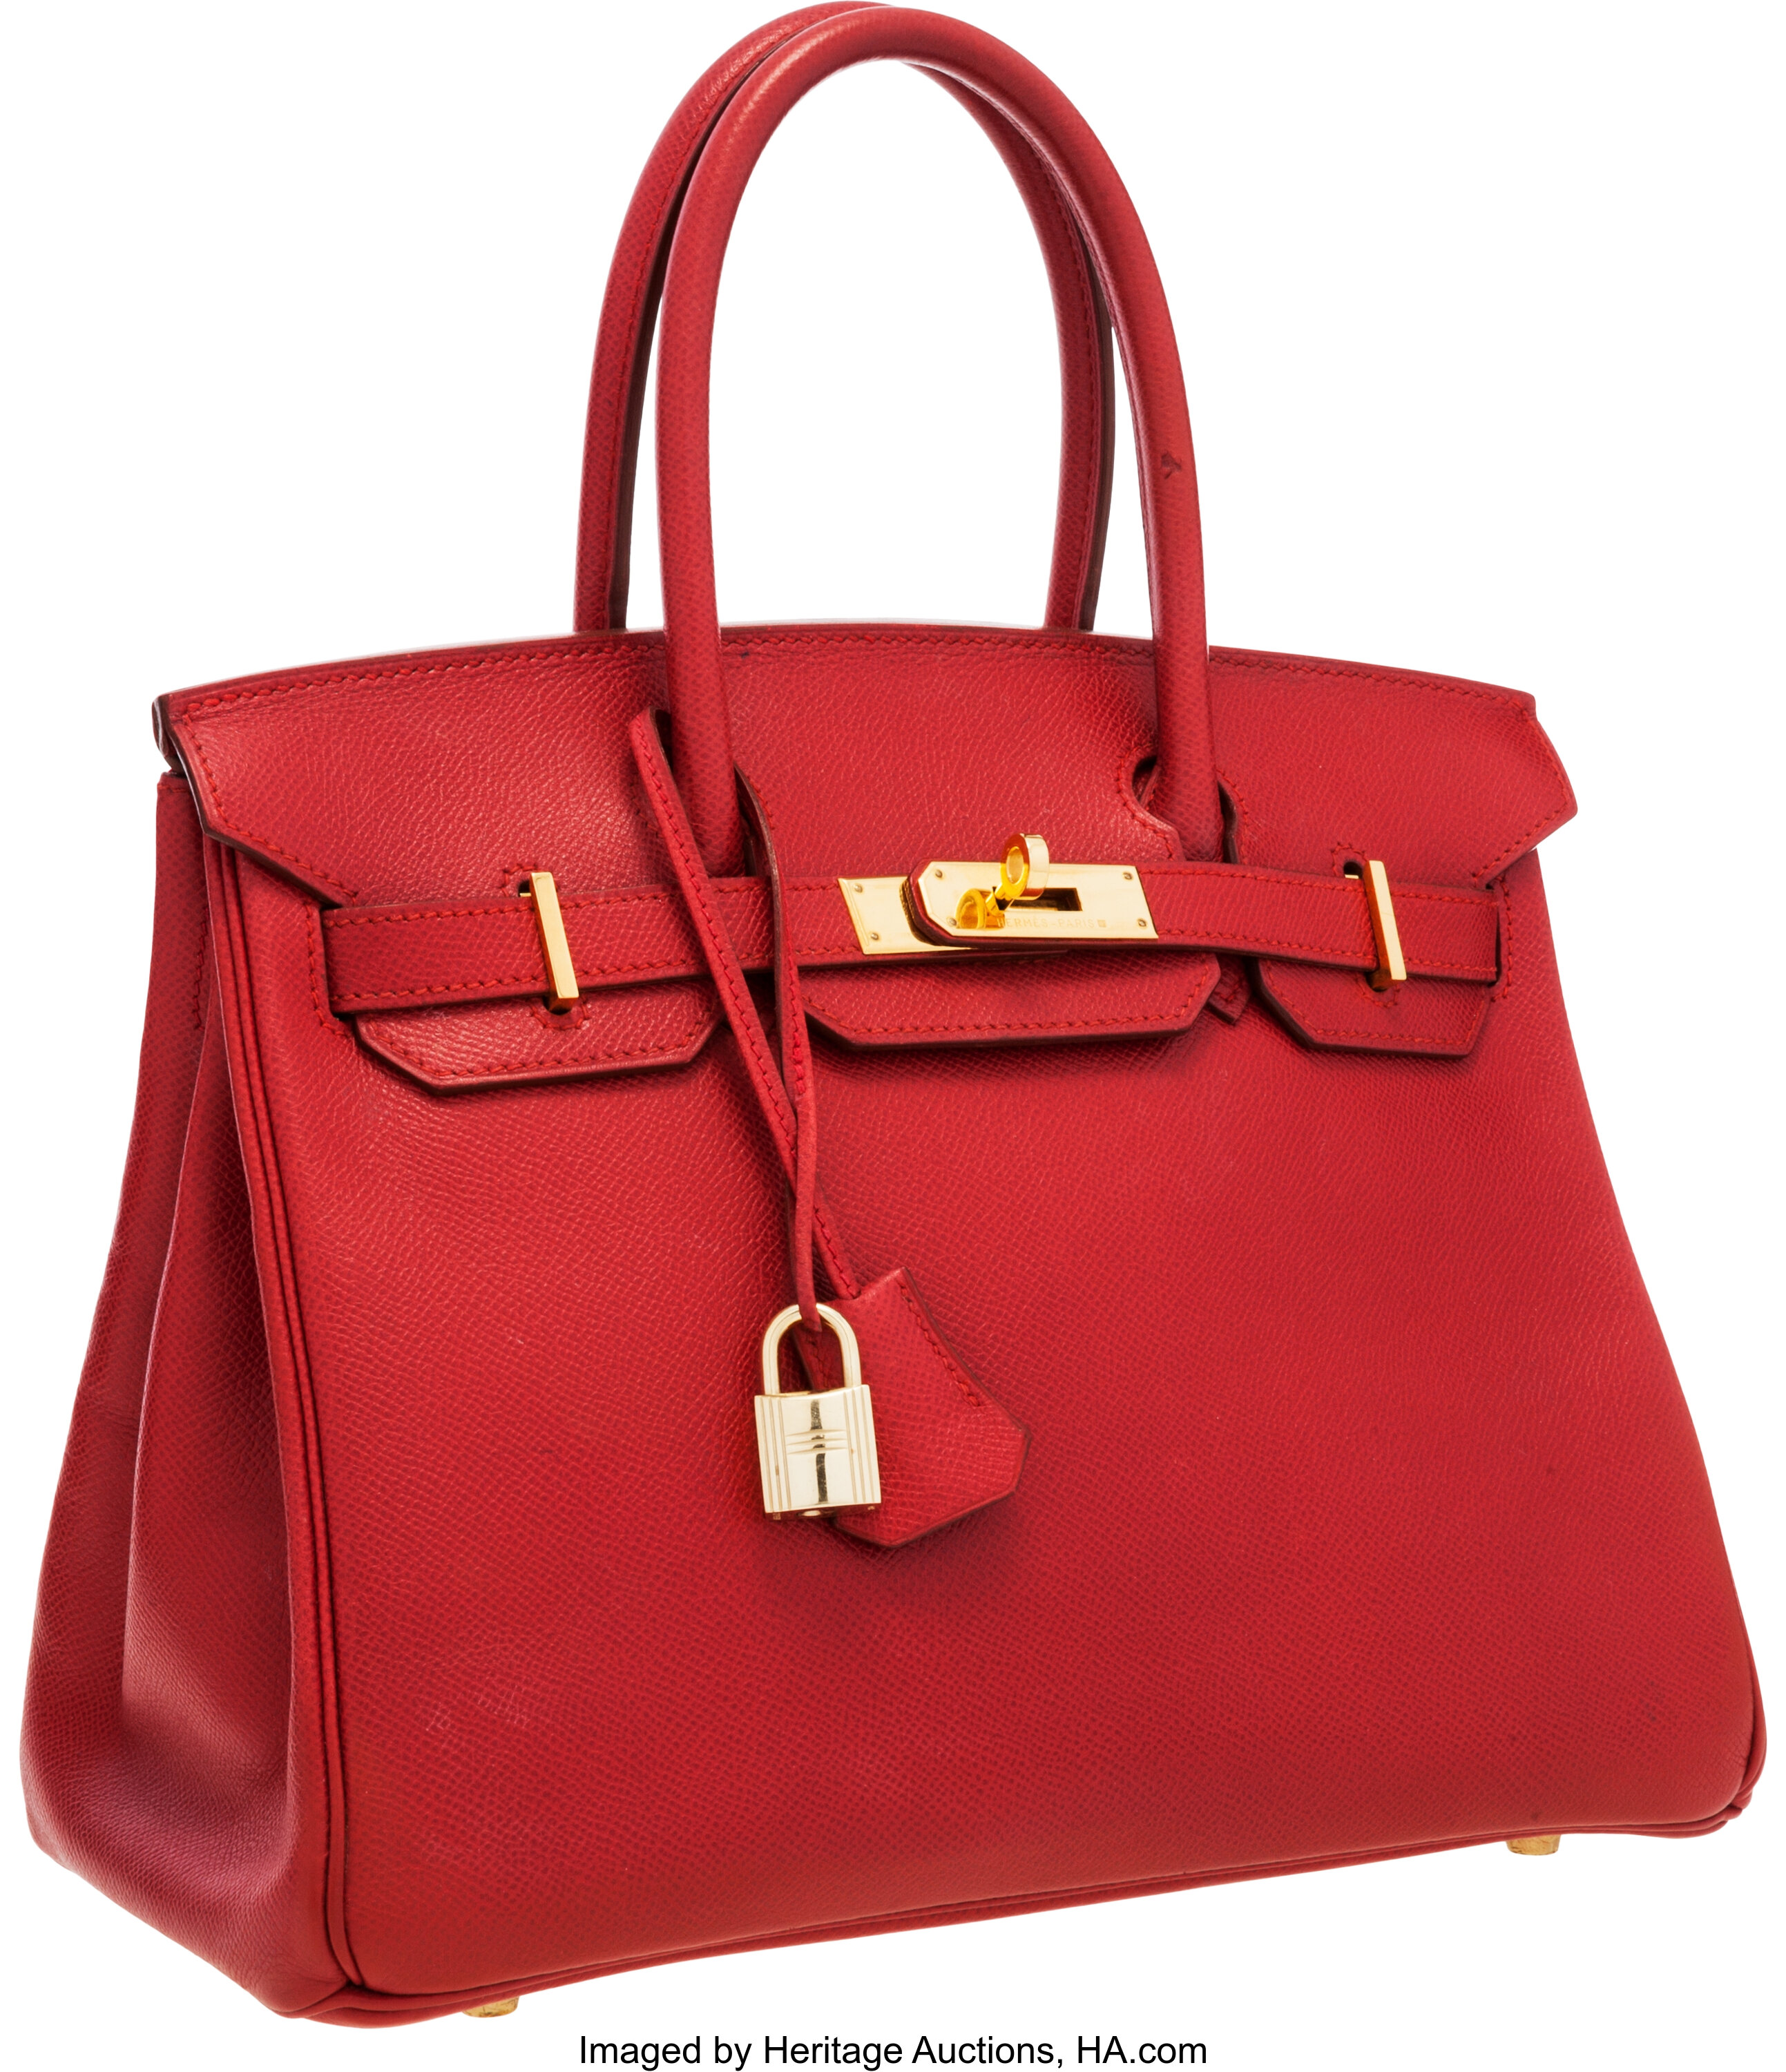 Hermes Birkin Handbag Rouge Vif Togo with Gold Hardware 25 Red